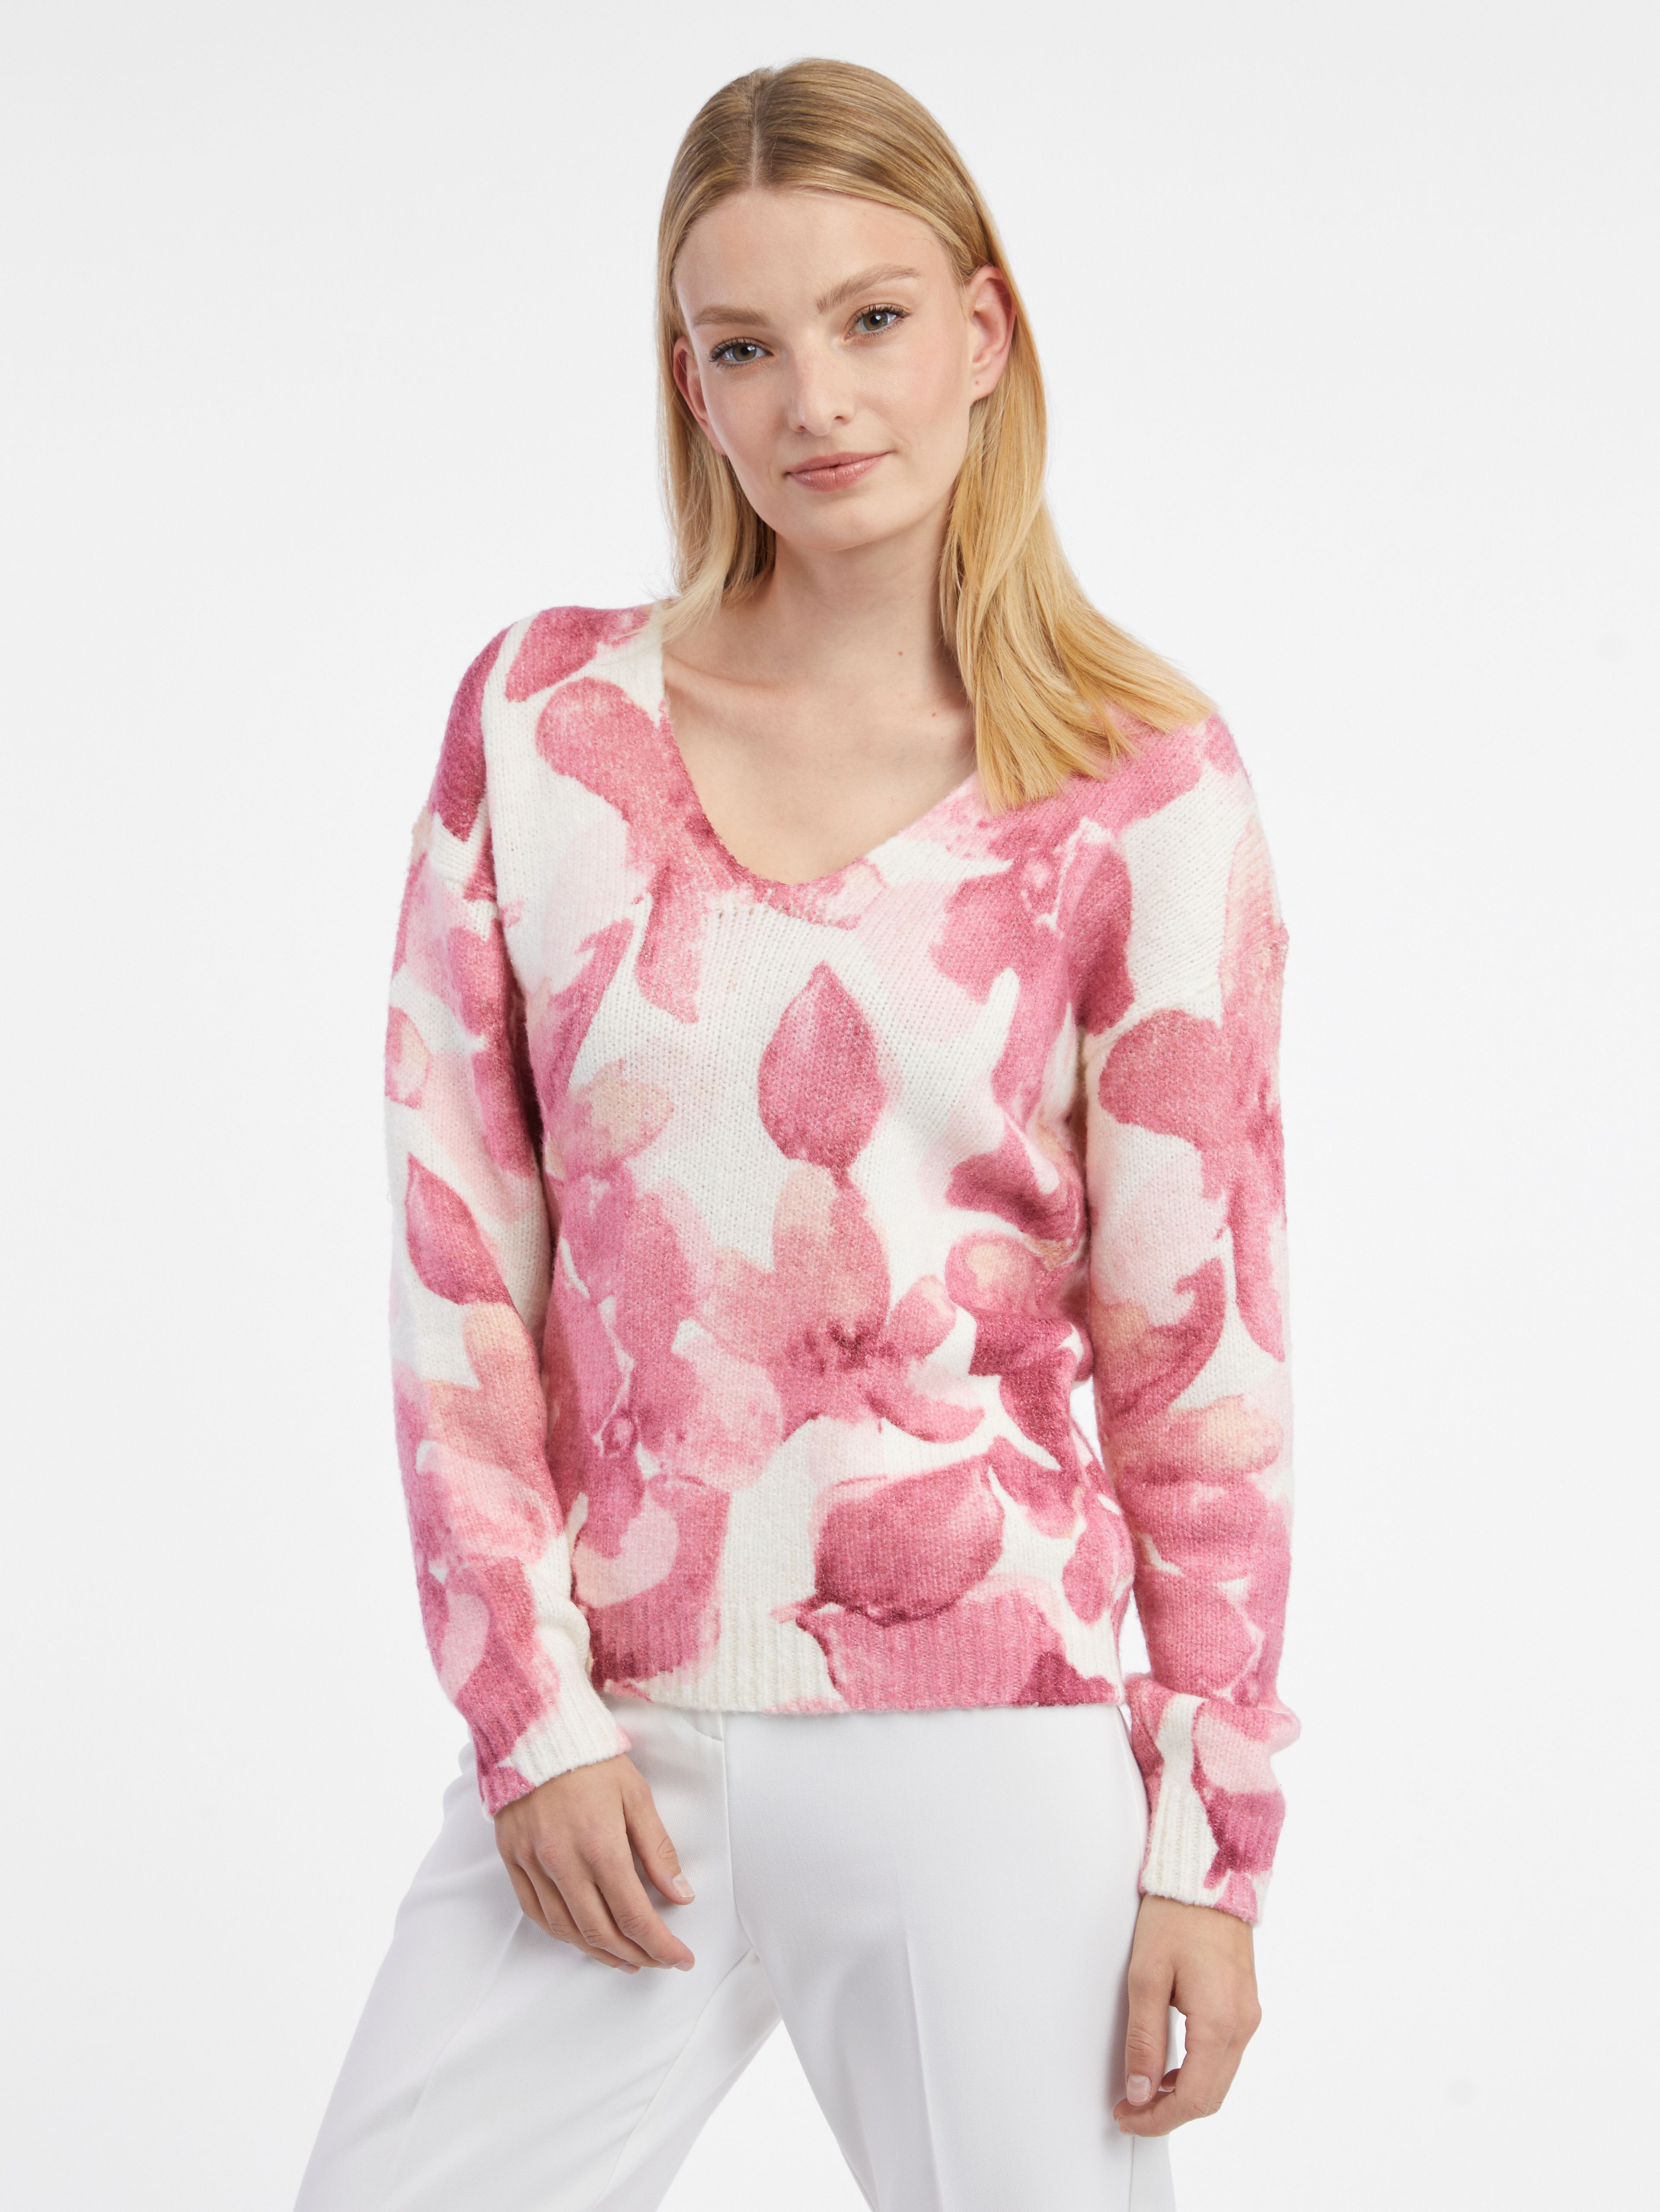 Ružovo-biely dámsky kvetovaný sveter ORSAY